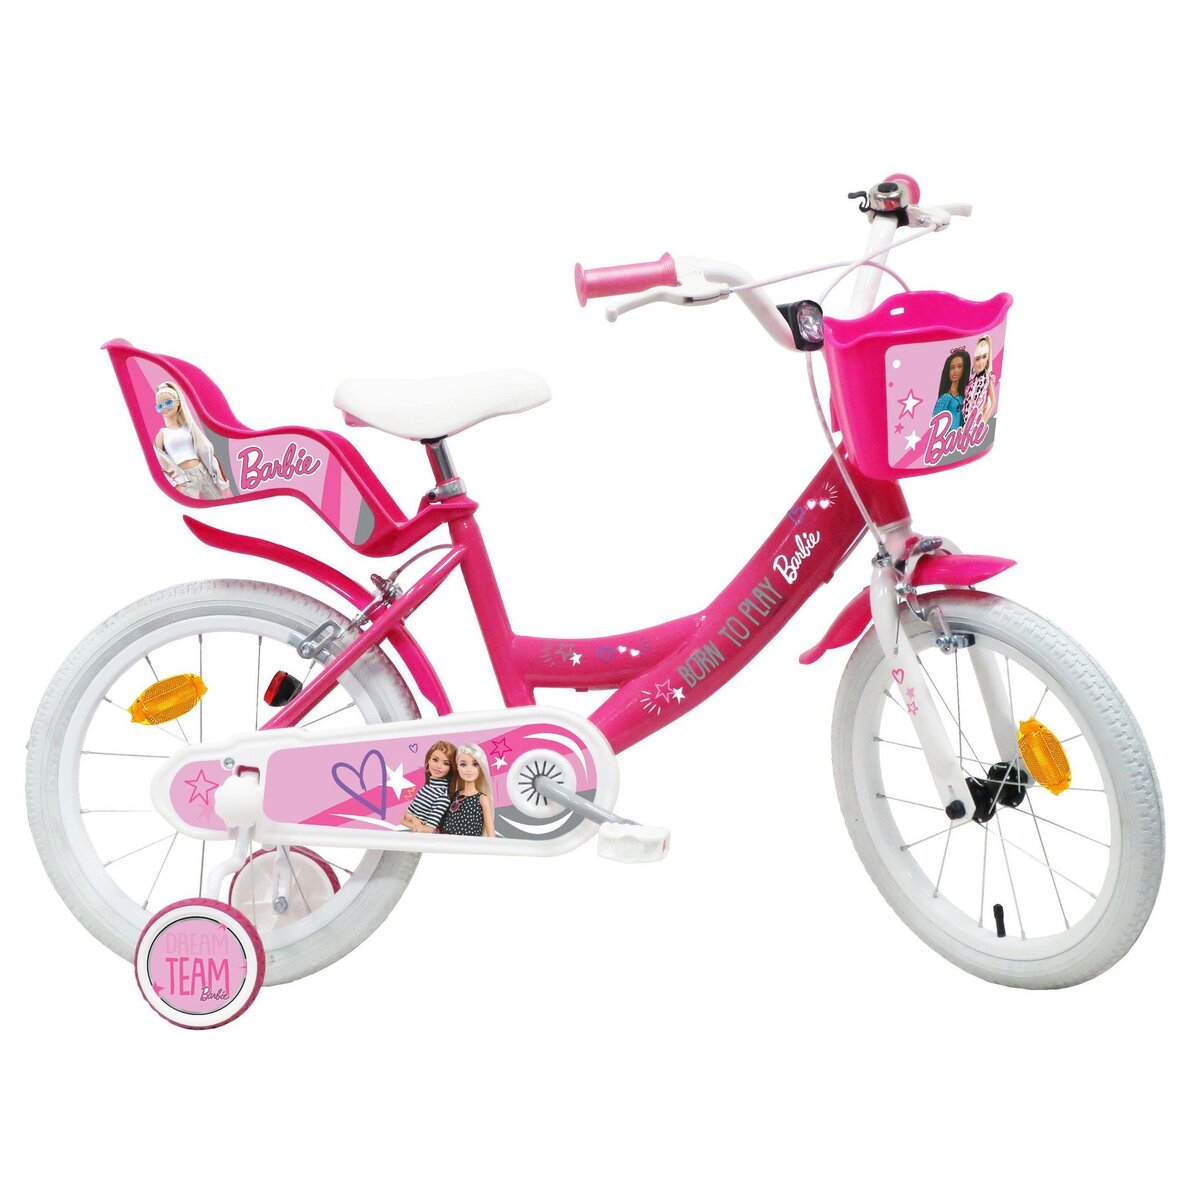  Vélo 16  Fille Licence  BARBIE  pour enfant de 5 à 7 ans avec stabilisateurs à molettes